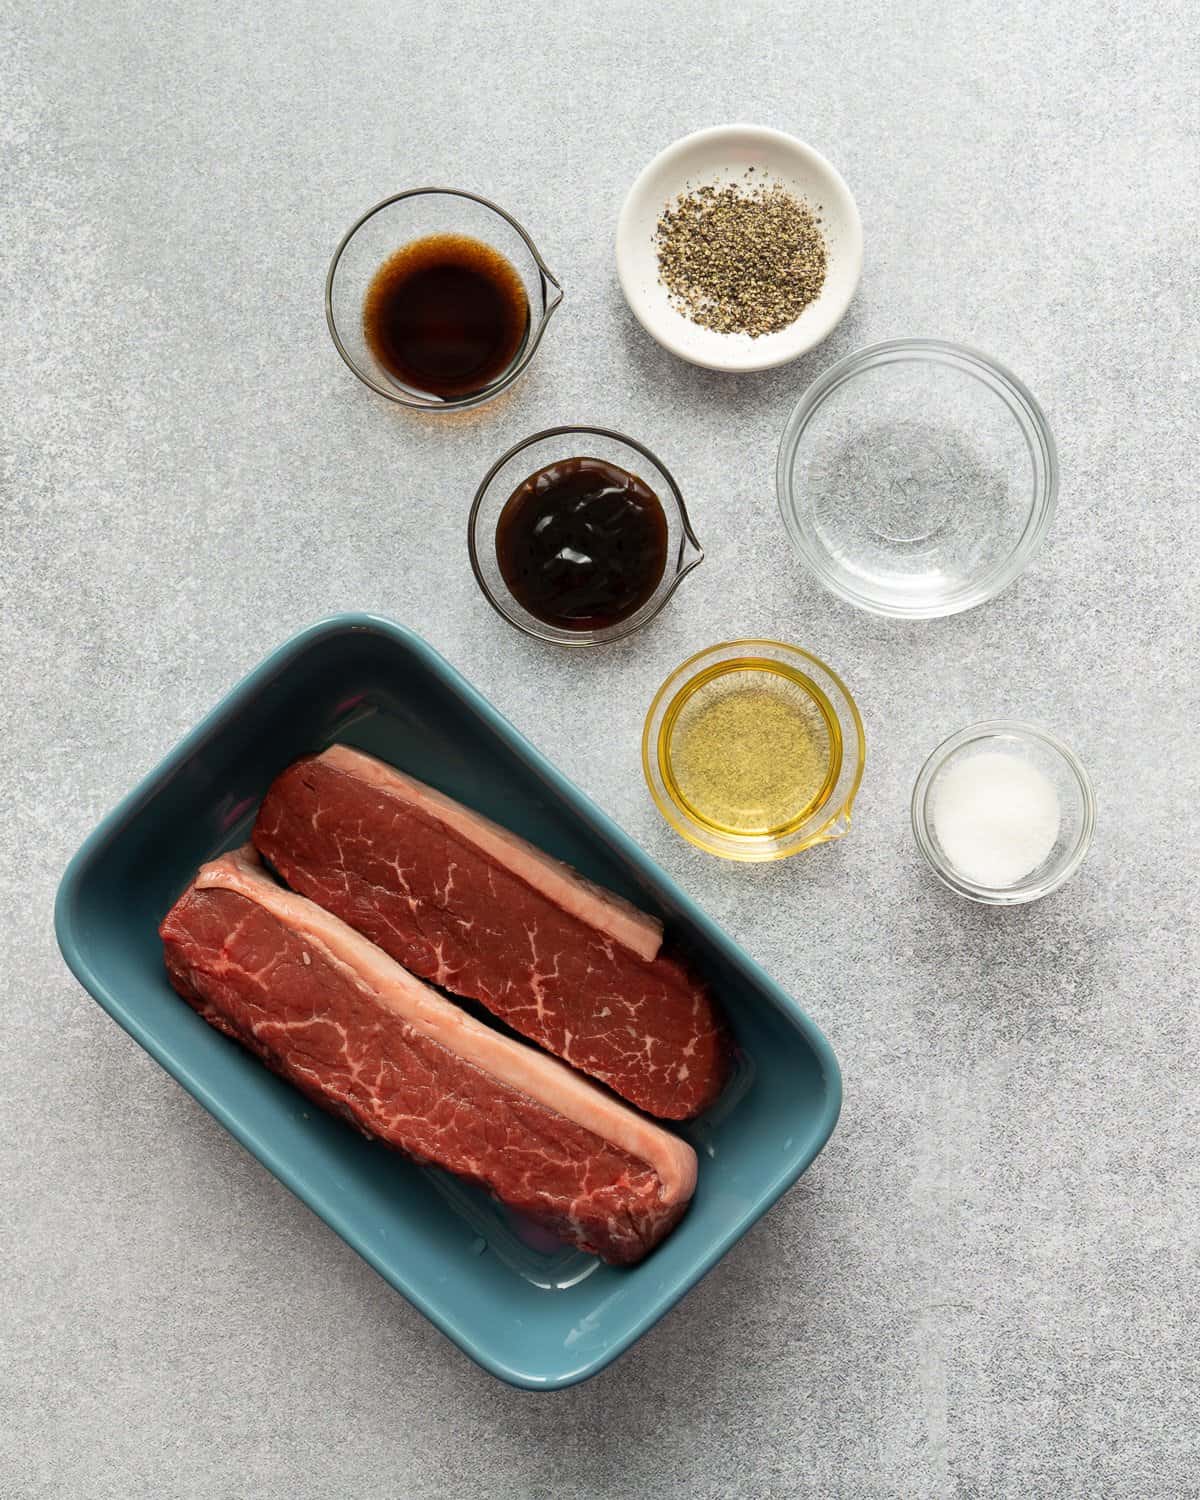 Ingredients for steak marinade